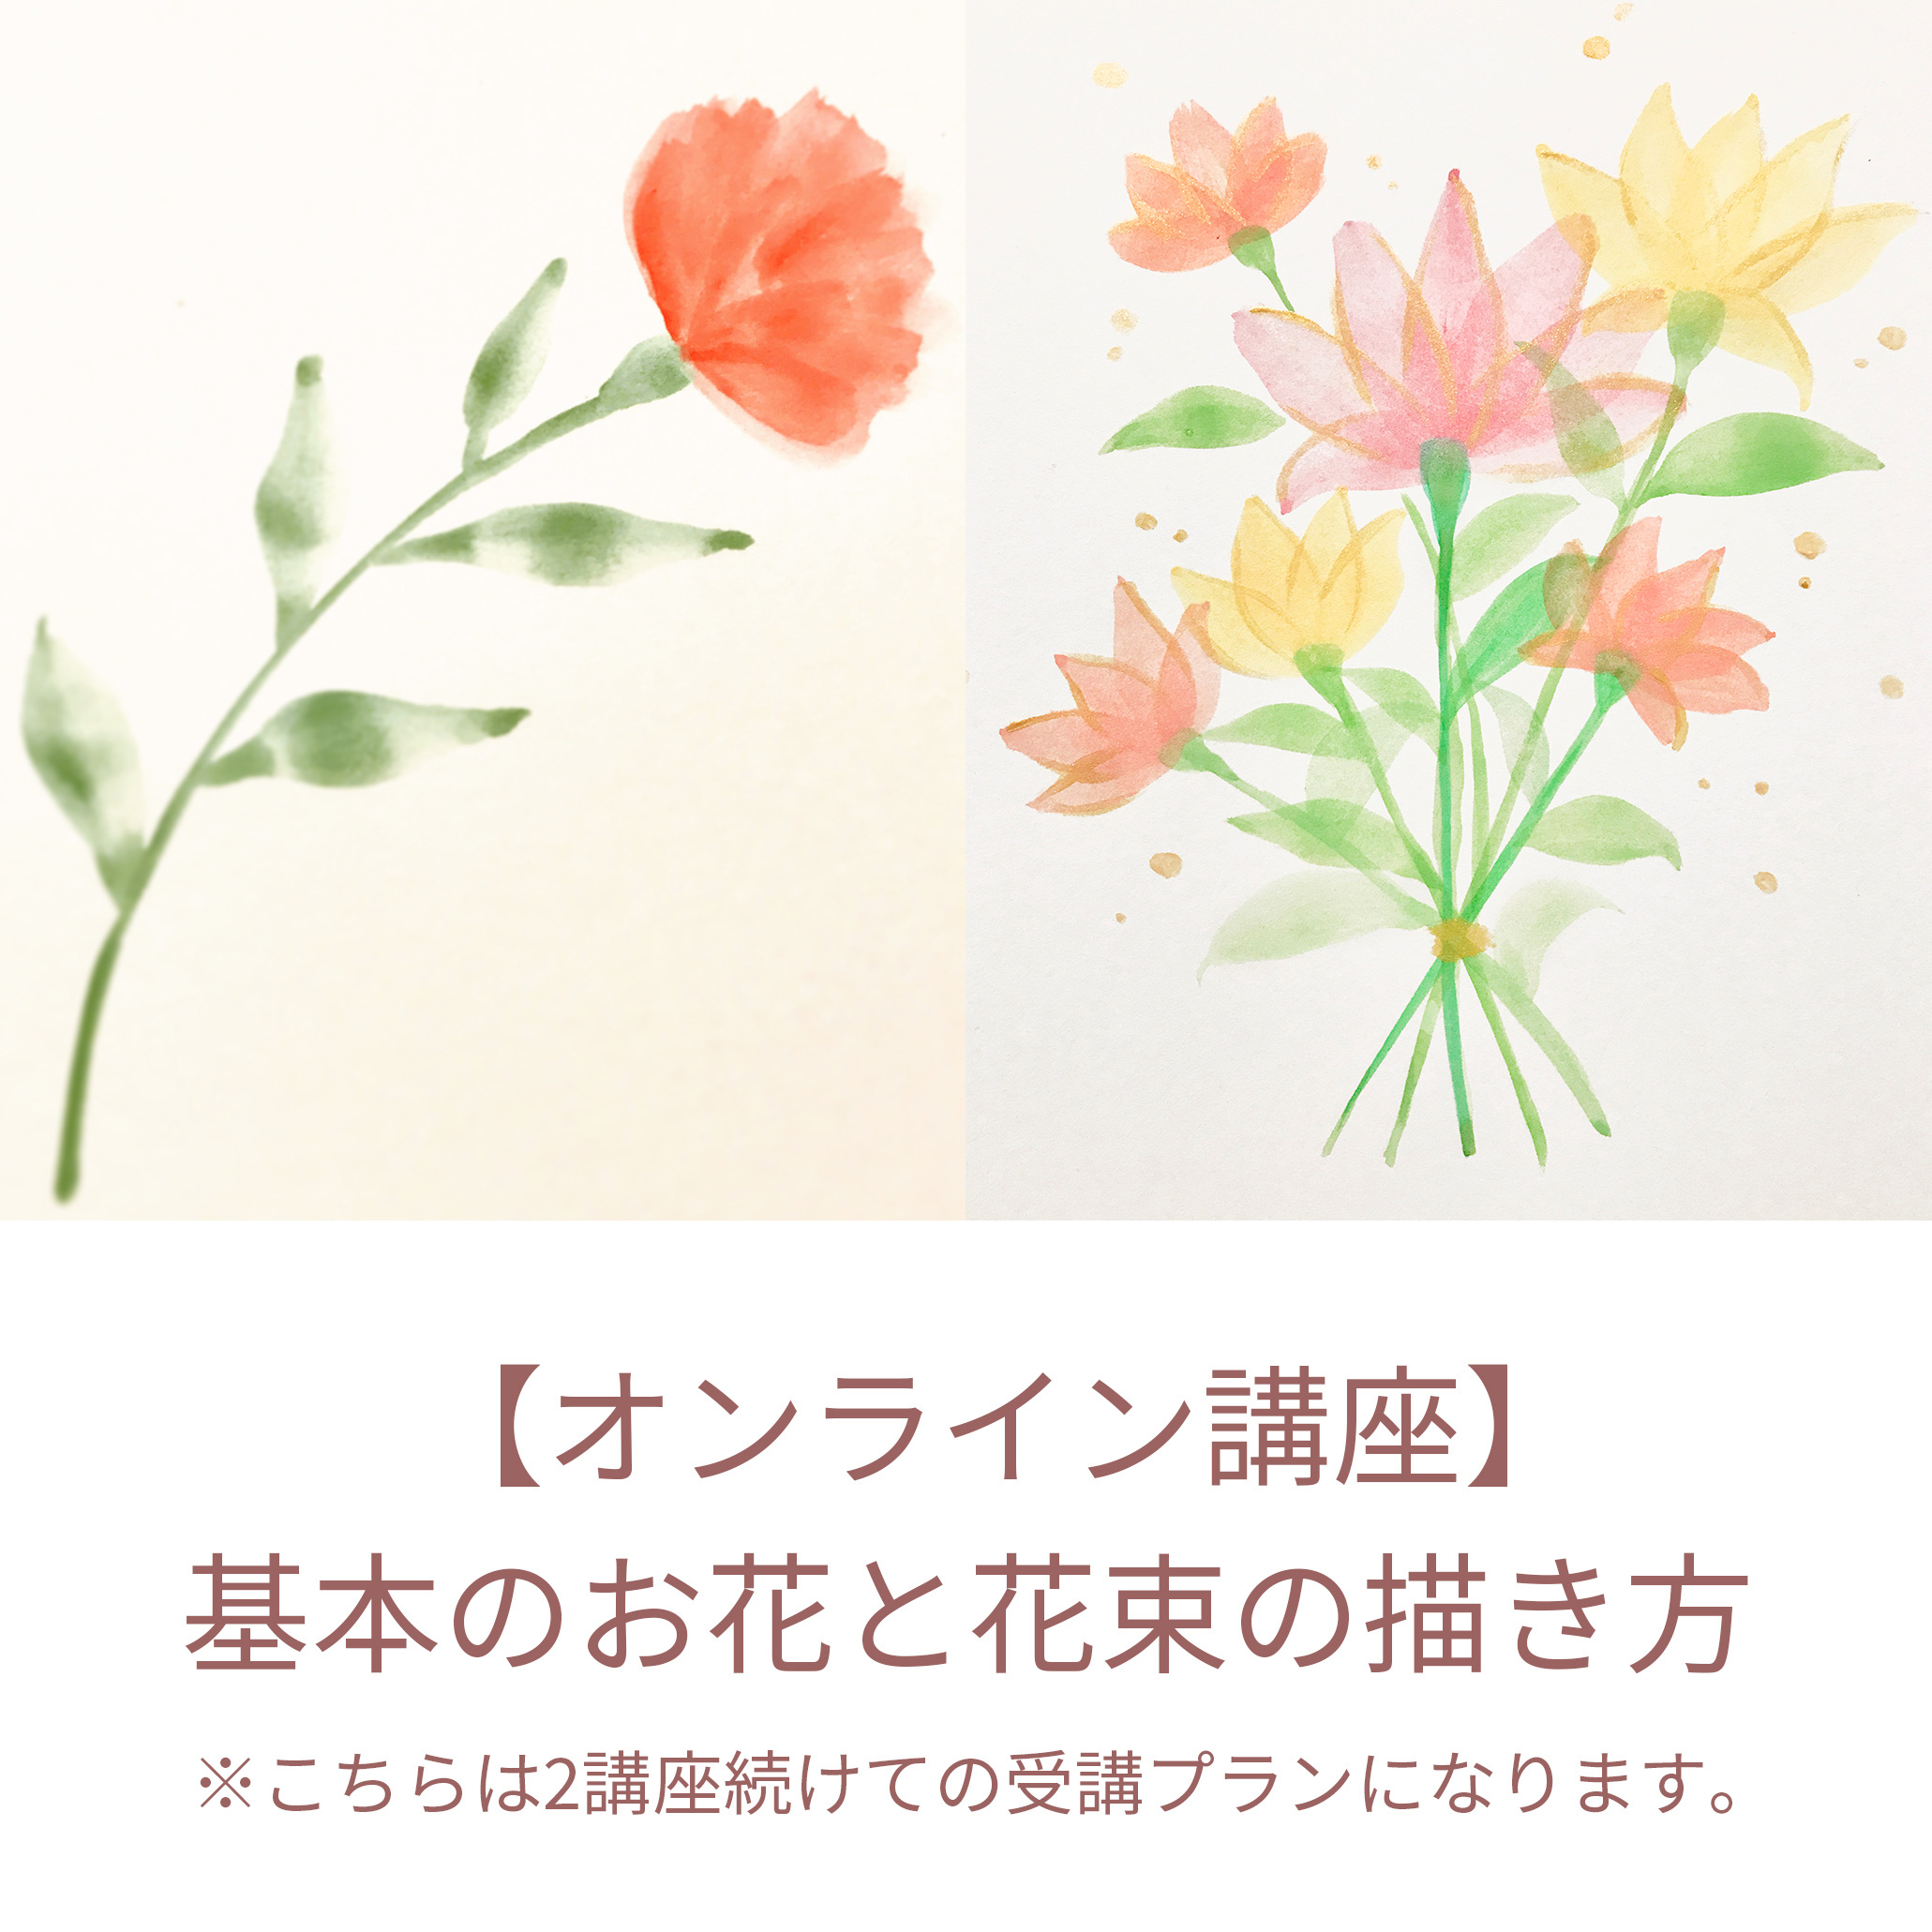 【オンライン講座】基本の葉っぱとお花と花束の描き方の写真